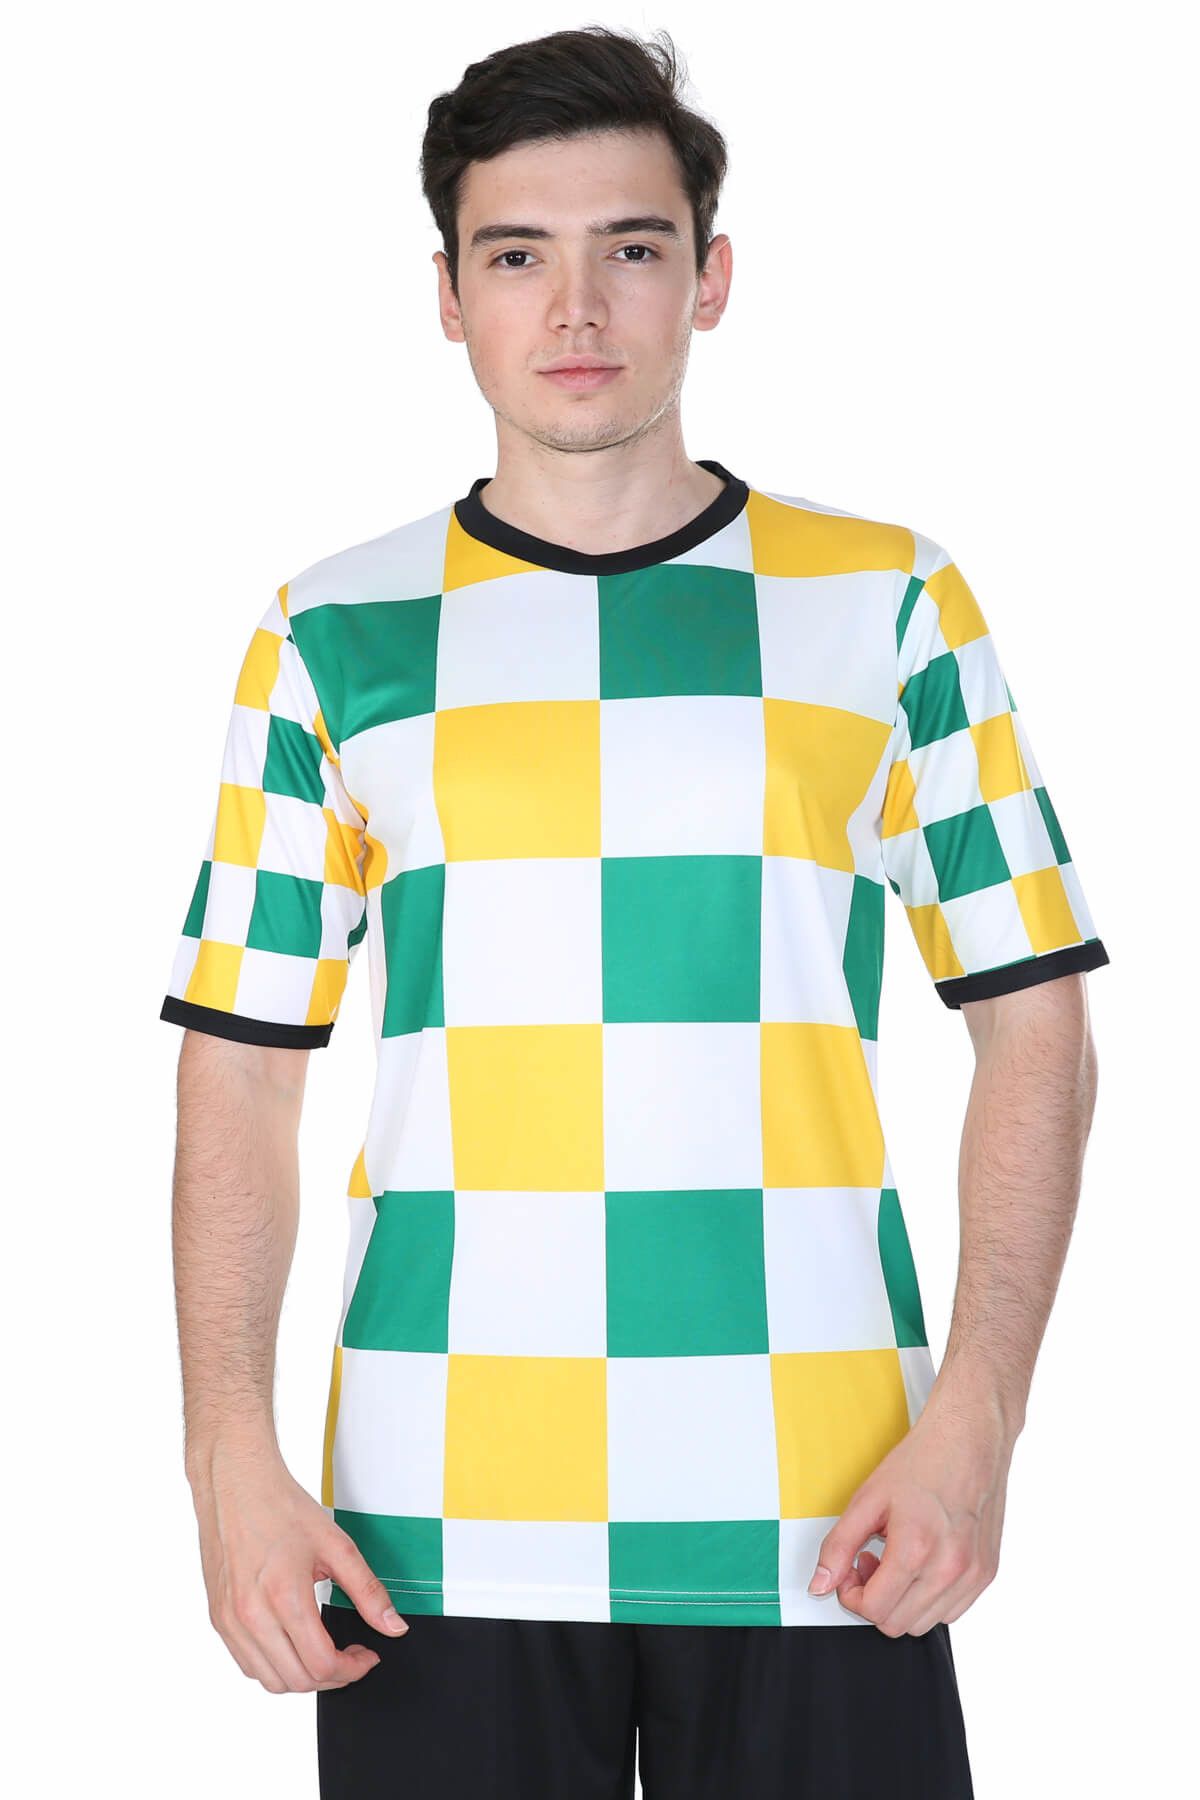 Umbro Erkek Yeşil-Sarı-Beyaz Kareli Desenli Futbol Forması - 2013910-0805